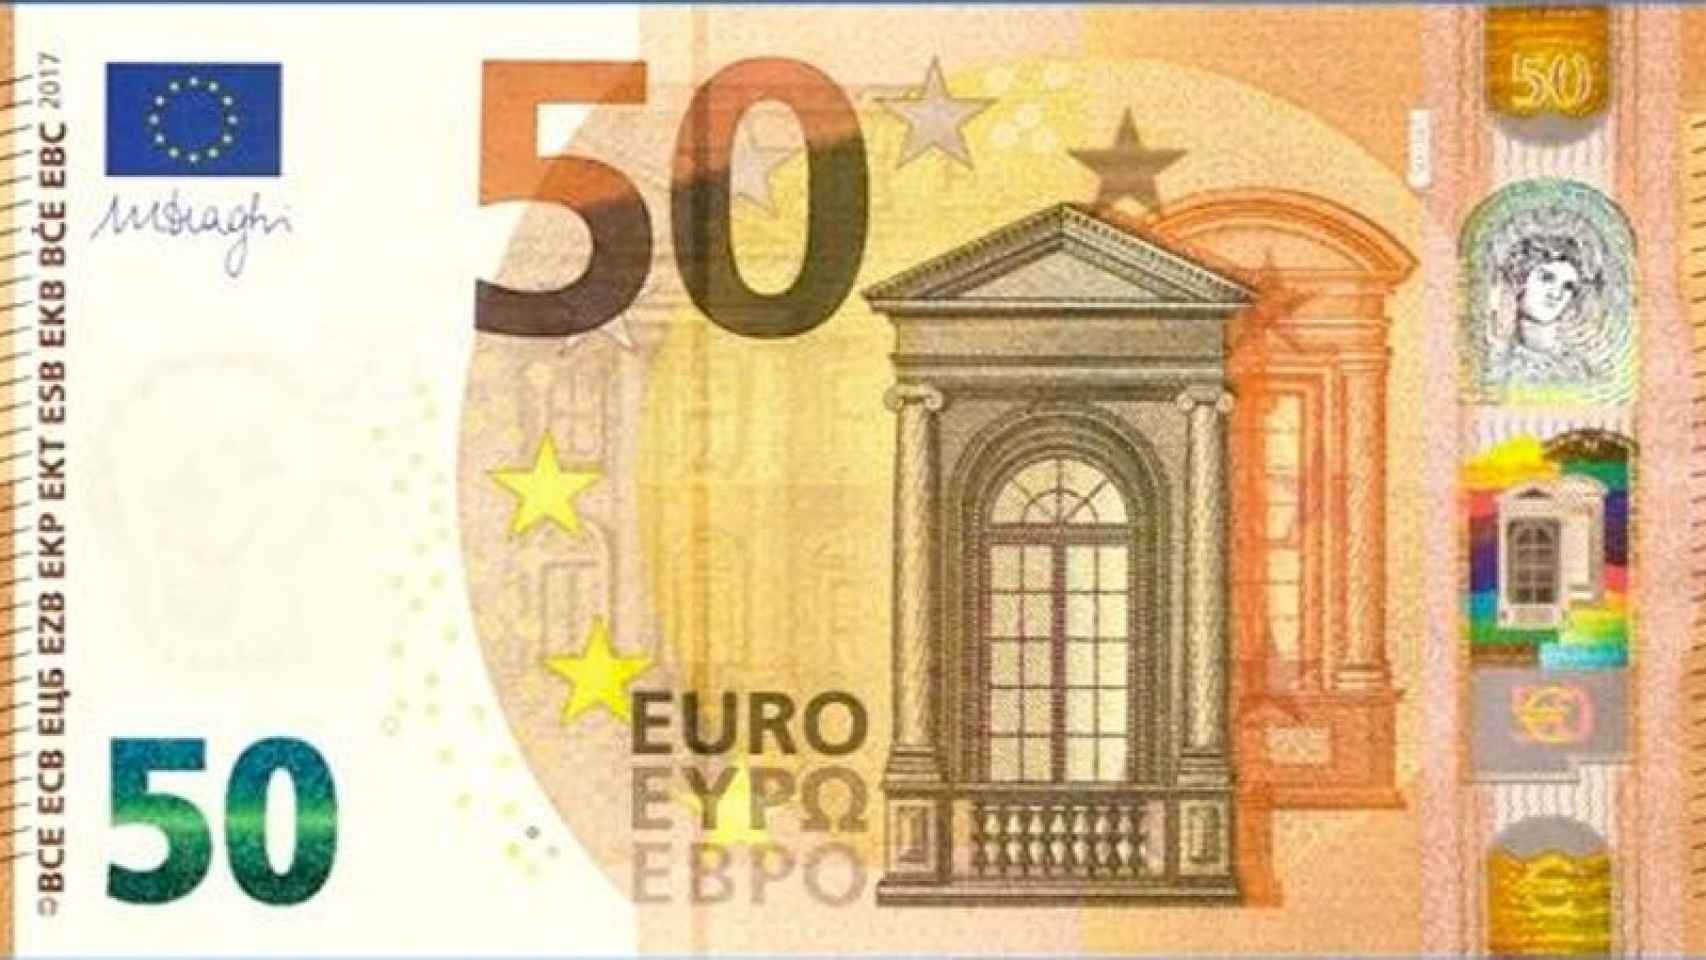 El nuevo billete de 50 euros.